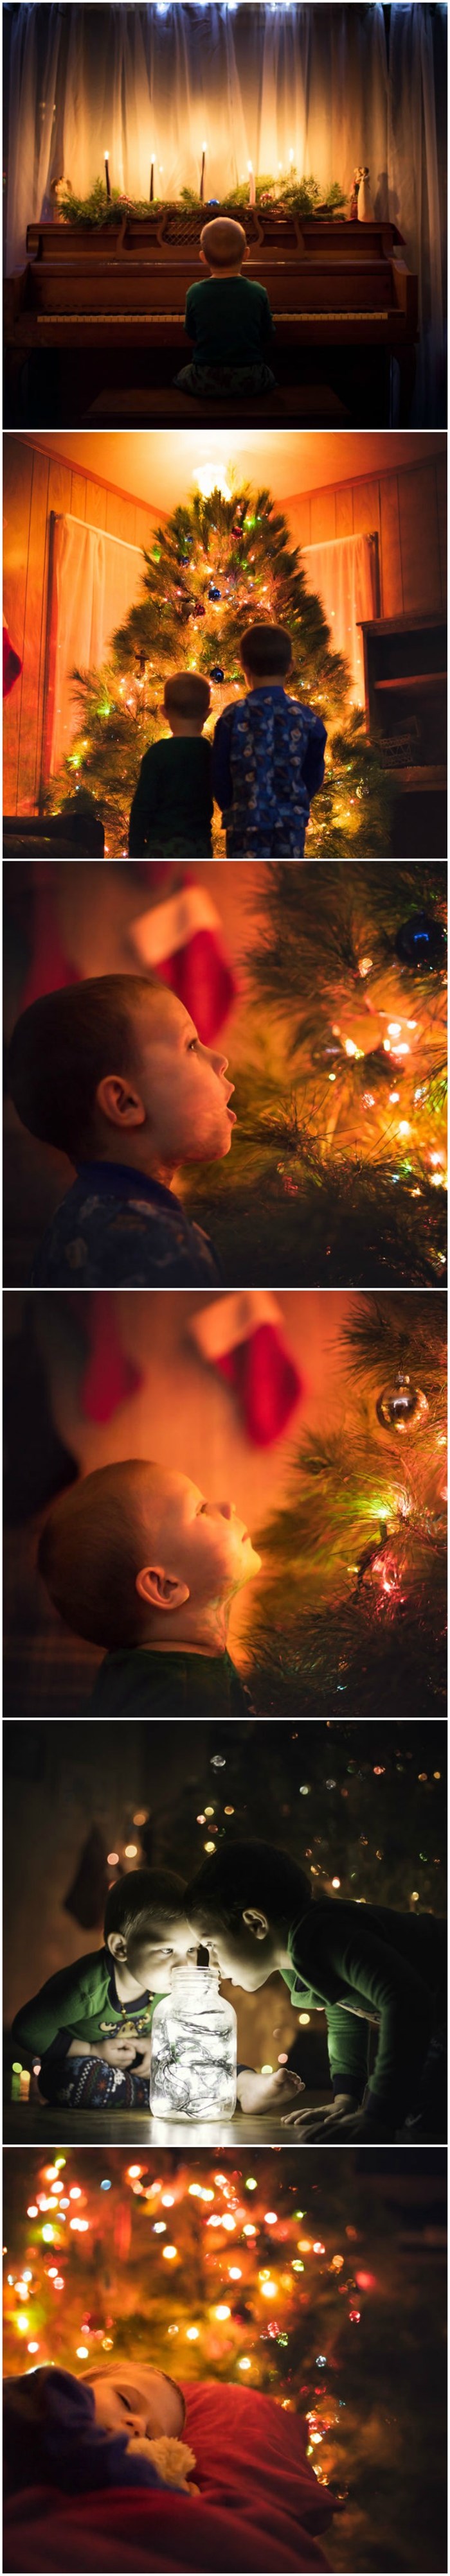 Ovakve božićne fotografije imaju djeca kojima je tata fotograf